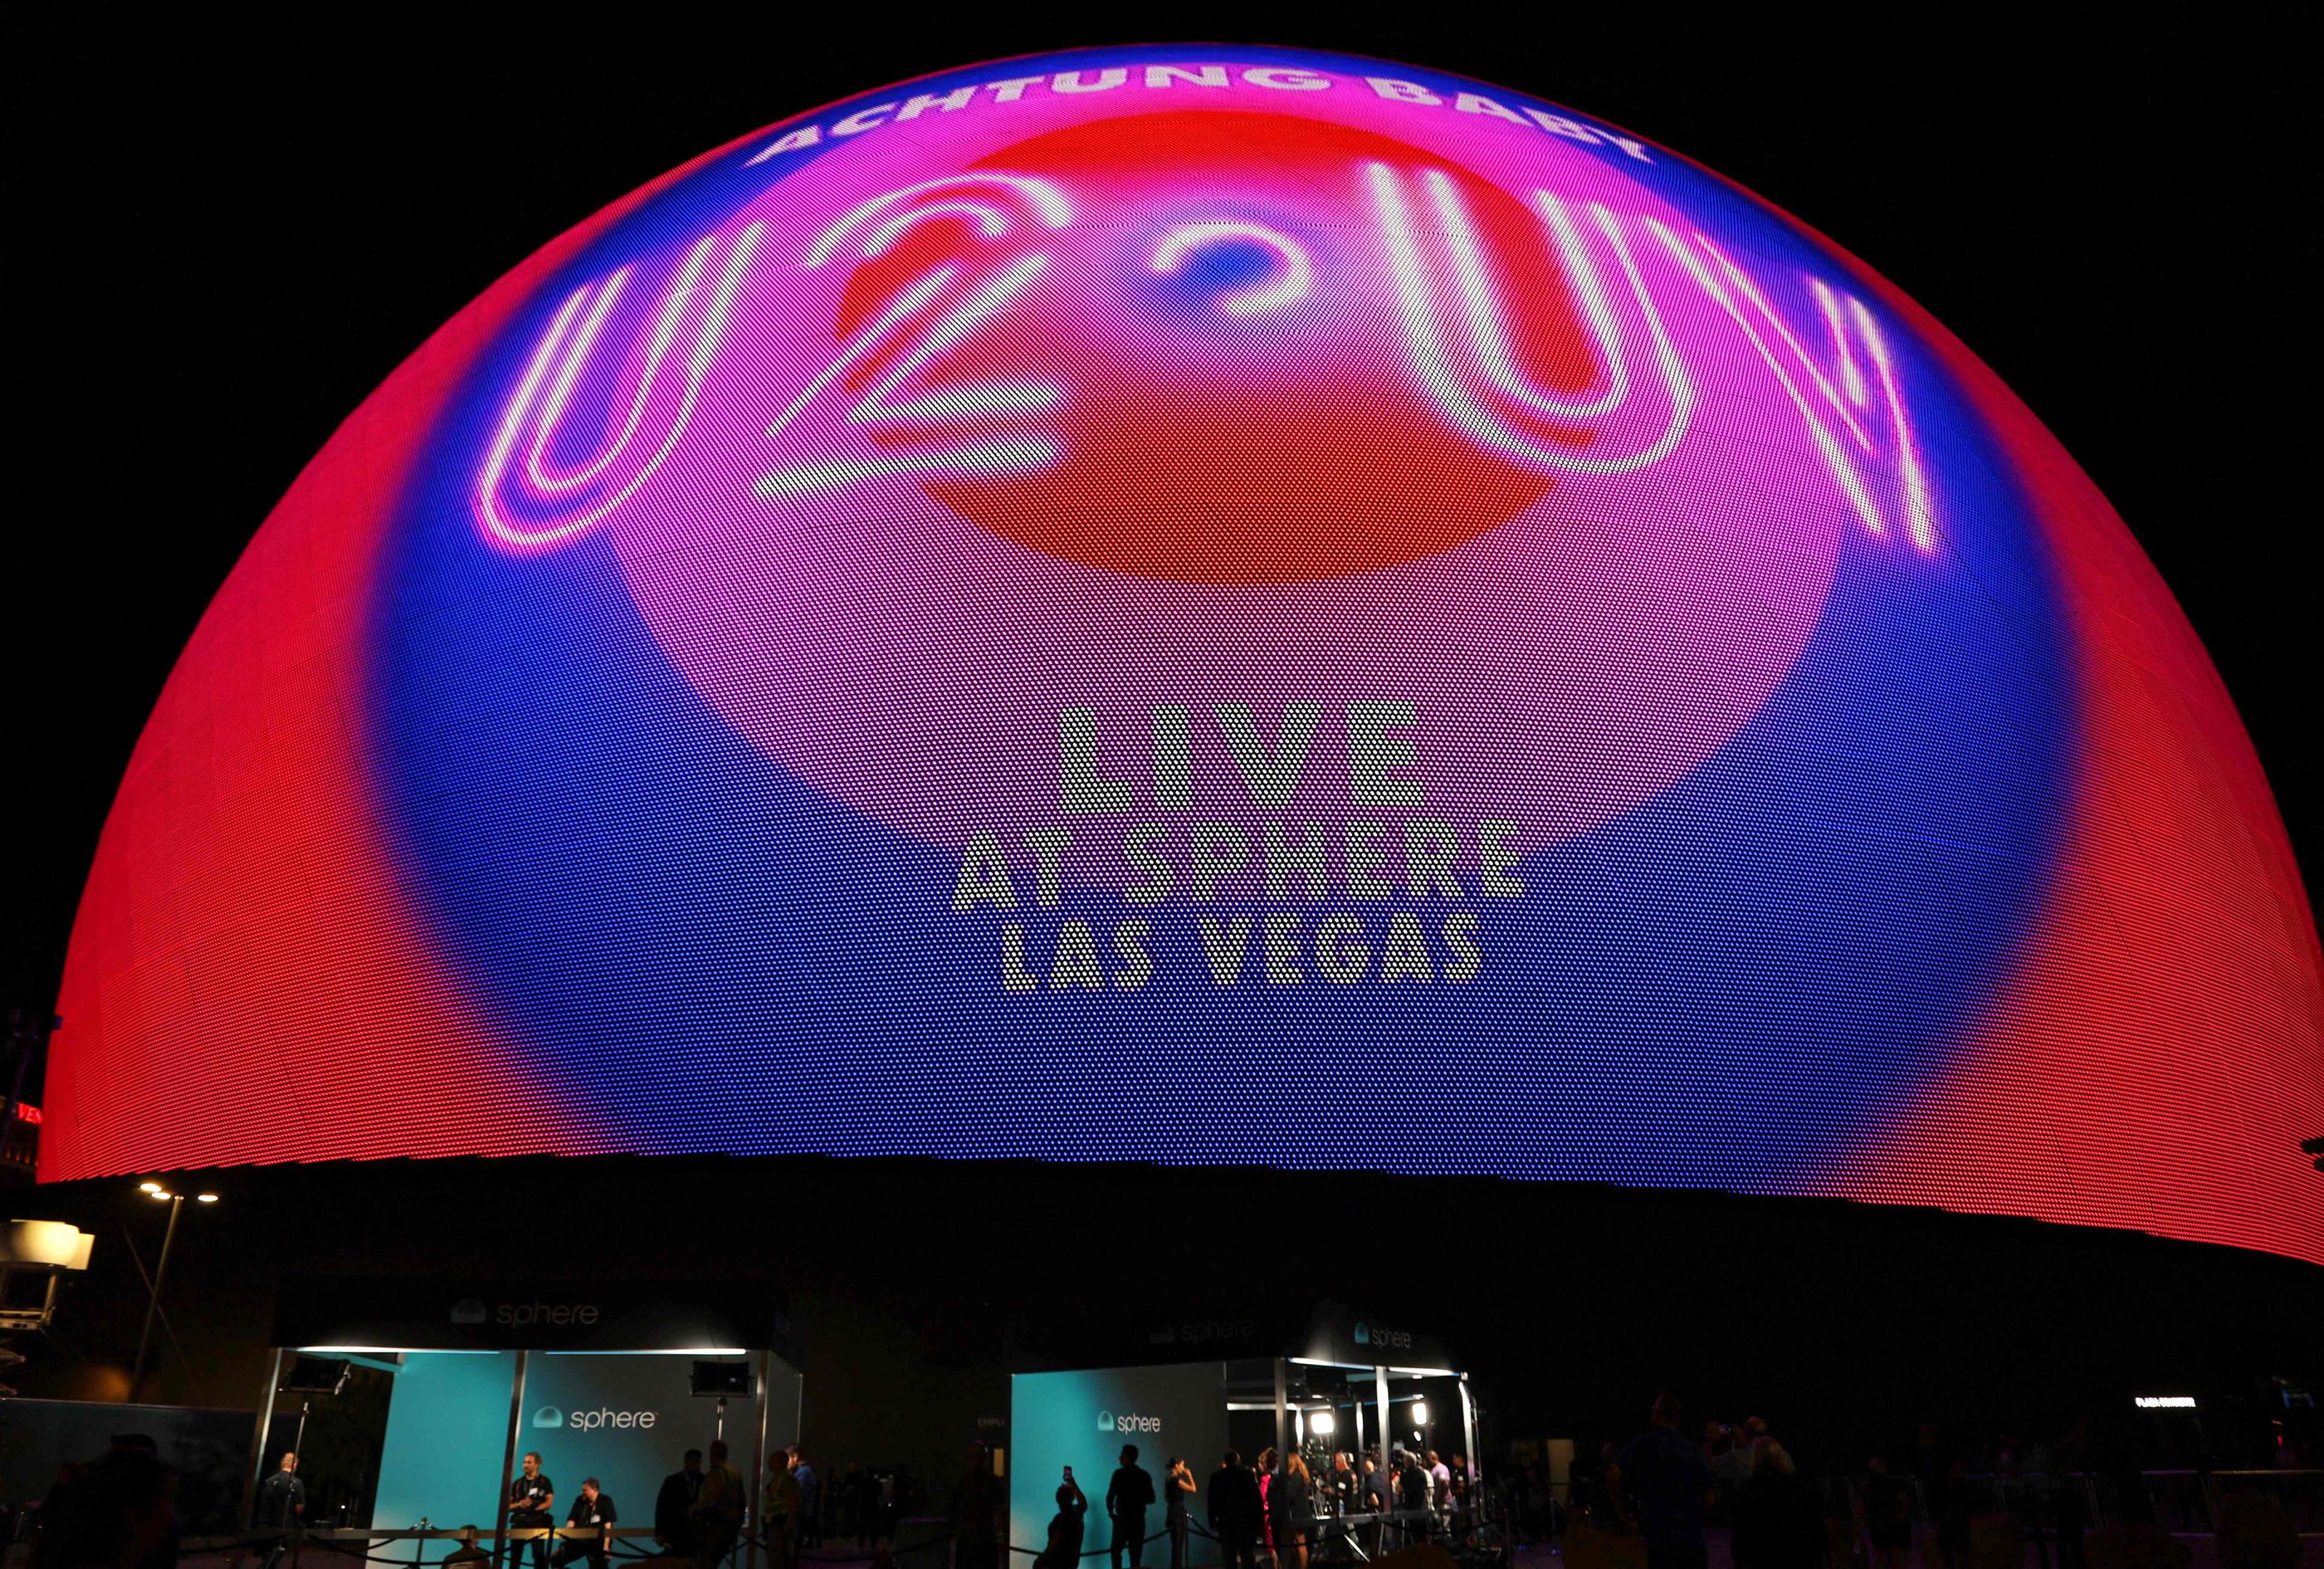 Le premier concert à The Sphere, salle de spectacle high-tech, a été donné par U2 vendredi à Las Vegas. AFP/Ronda Churchill